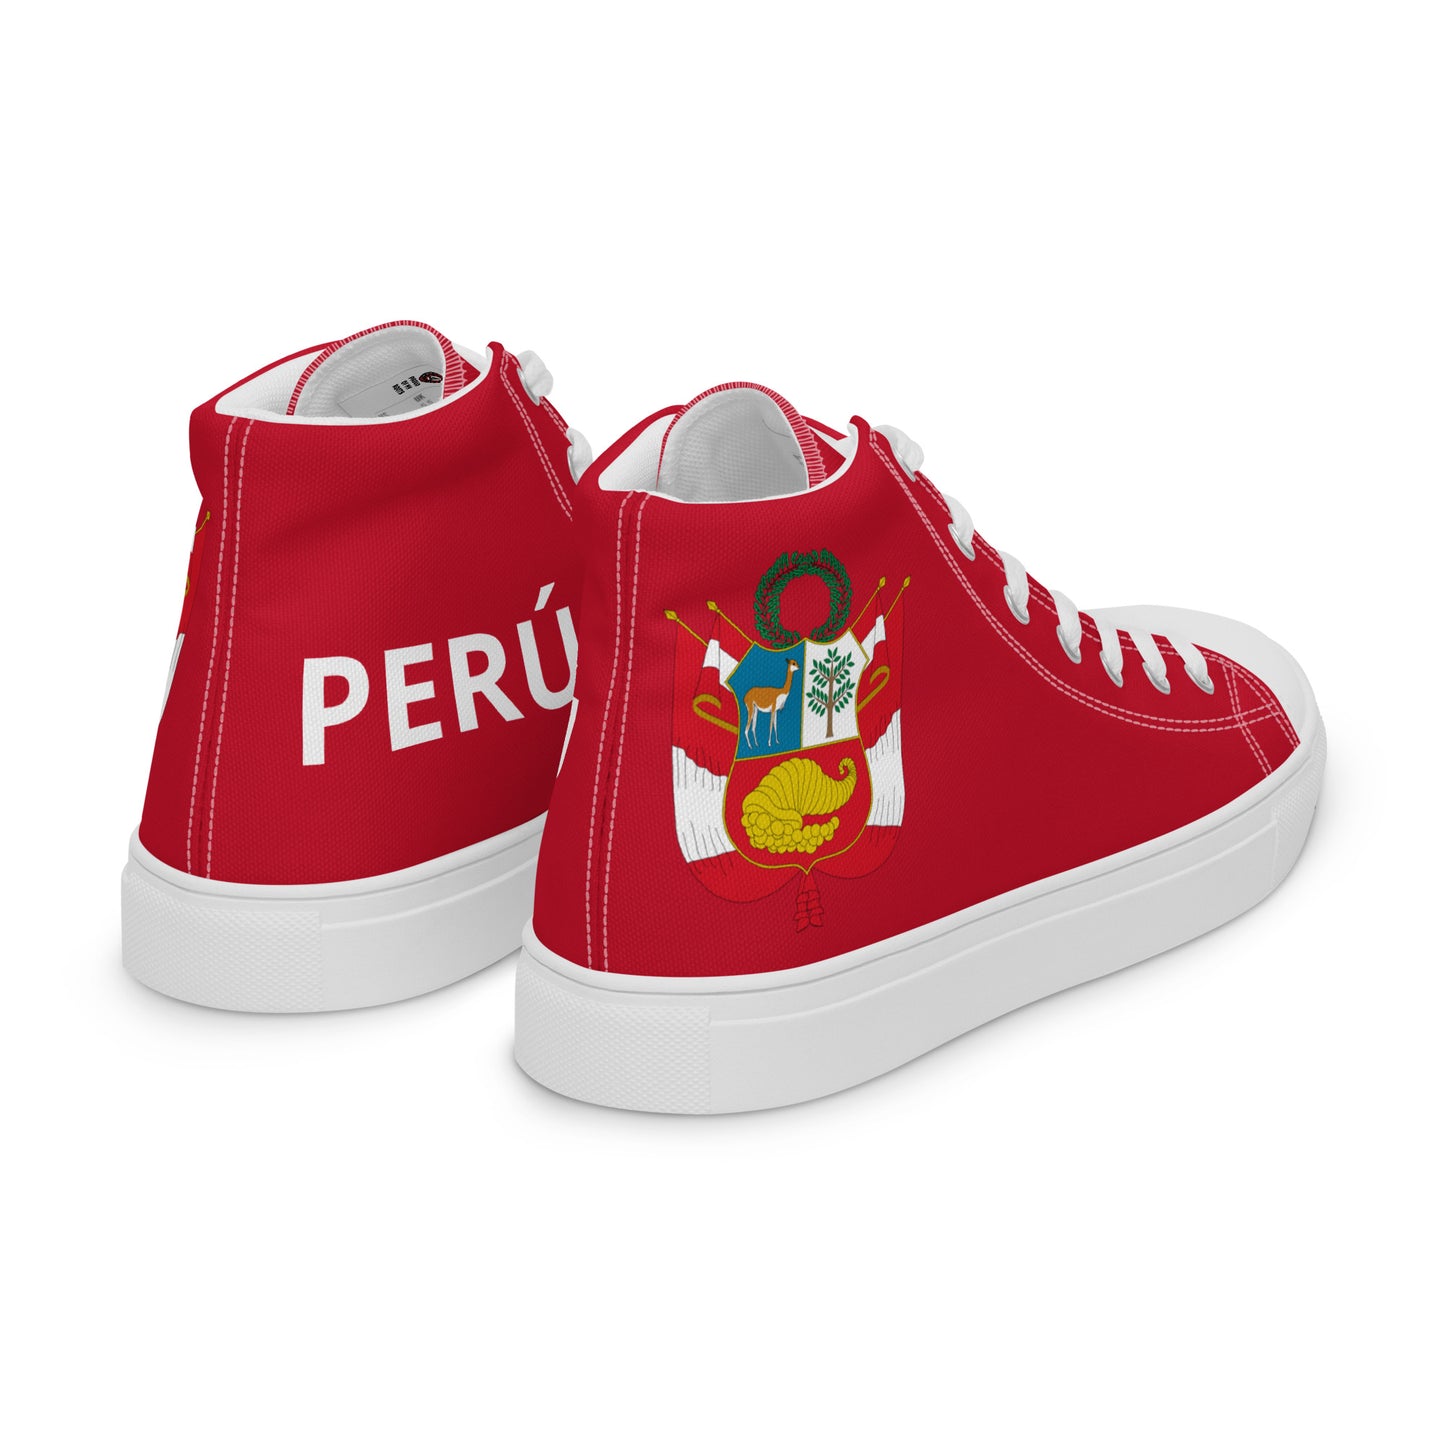 Perú - Men - Red - High top shoes